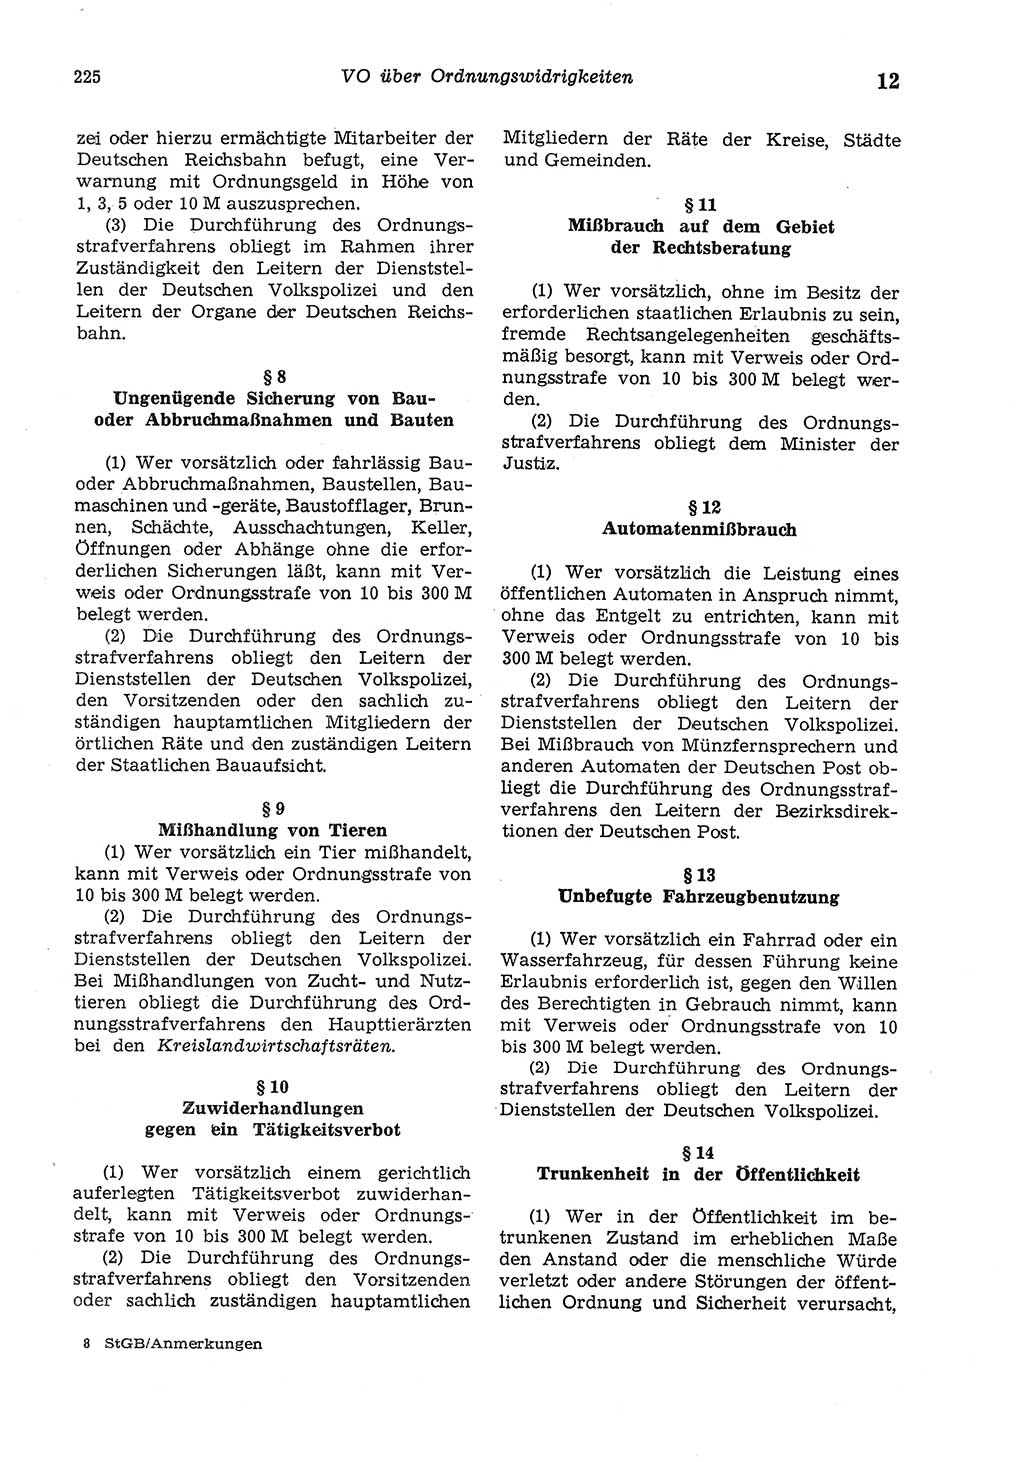 Strafgesetzbuch (StGB) der Deutschen Demokratischen Republik (DDR) und angrenzende Gesetze und Bestimmungen 1975, Seite 225 (StGB DDR Ges. Best. 1975, S. 225)